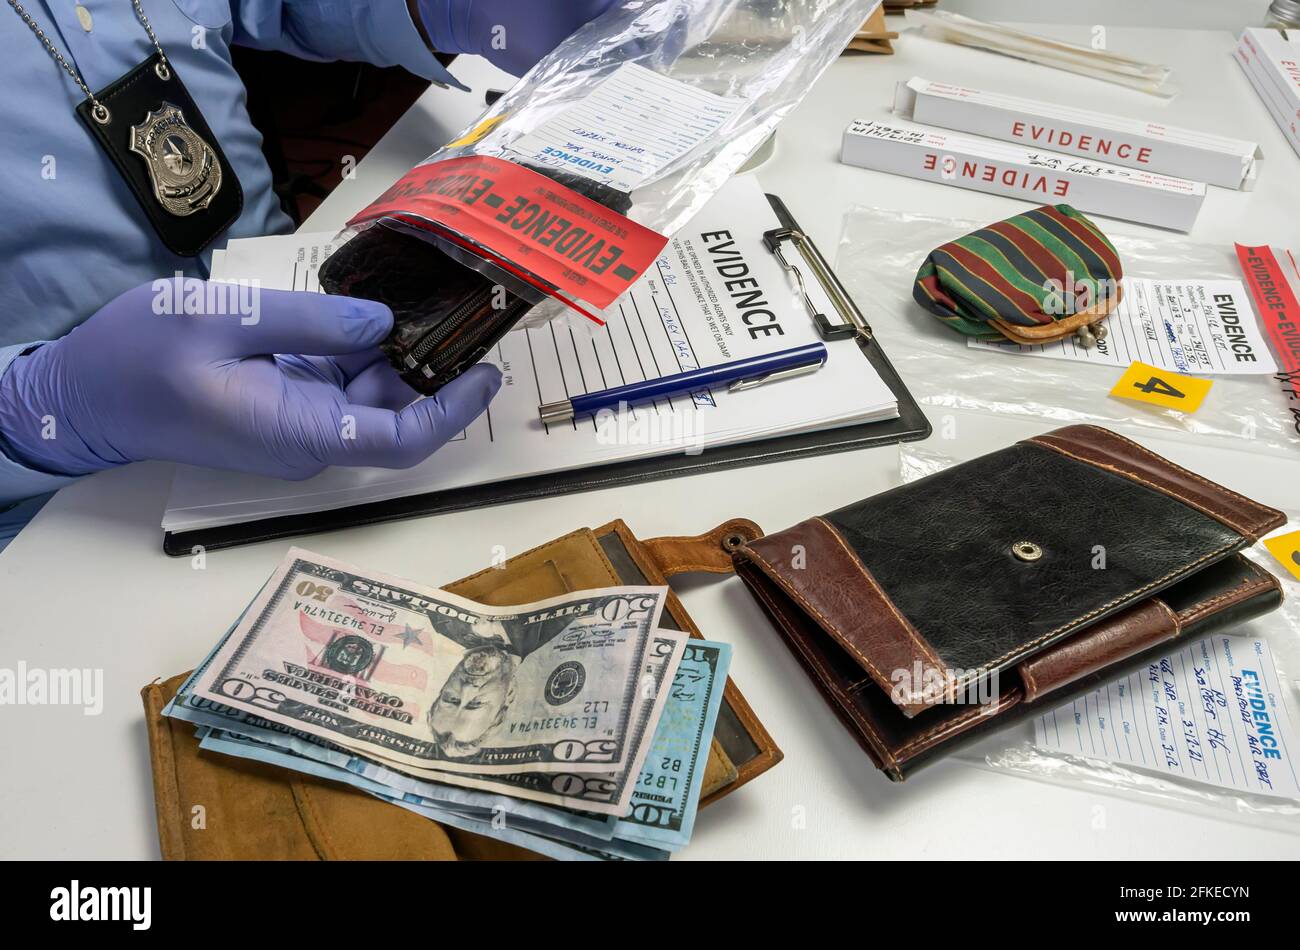 Un agent de police spécialisé prend le portefeuille avec l'argent d'un sac de preuve de meurtre, image conceptuelle Banque D'Images